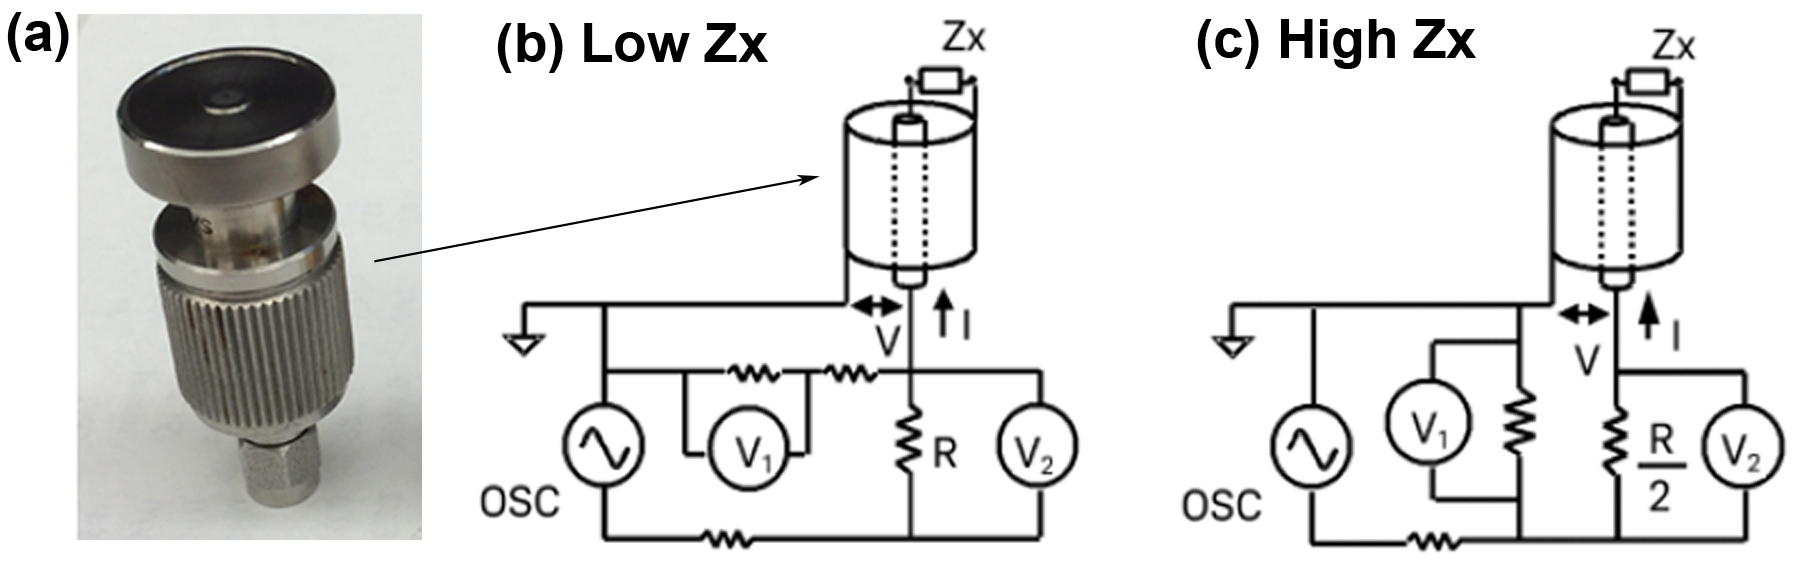 (a) Sonda dieléctrica (se colocan líquidos en esta sonda). Esquema de circuito de mediciones de impedancia para (b) materiales de baja y (c) alta impedancia. Los símbolos de circuito Osc, Zx, V, I y R representan oscilador (es decir, fuente de frecuencia), impedancia de muestra, voltaje, corriente y resistencia, respectivamente.